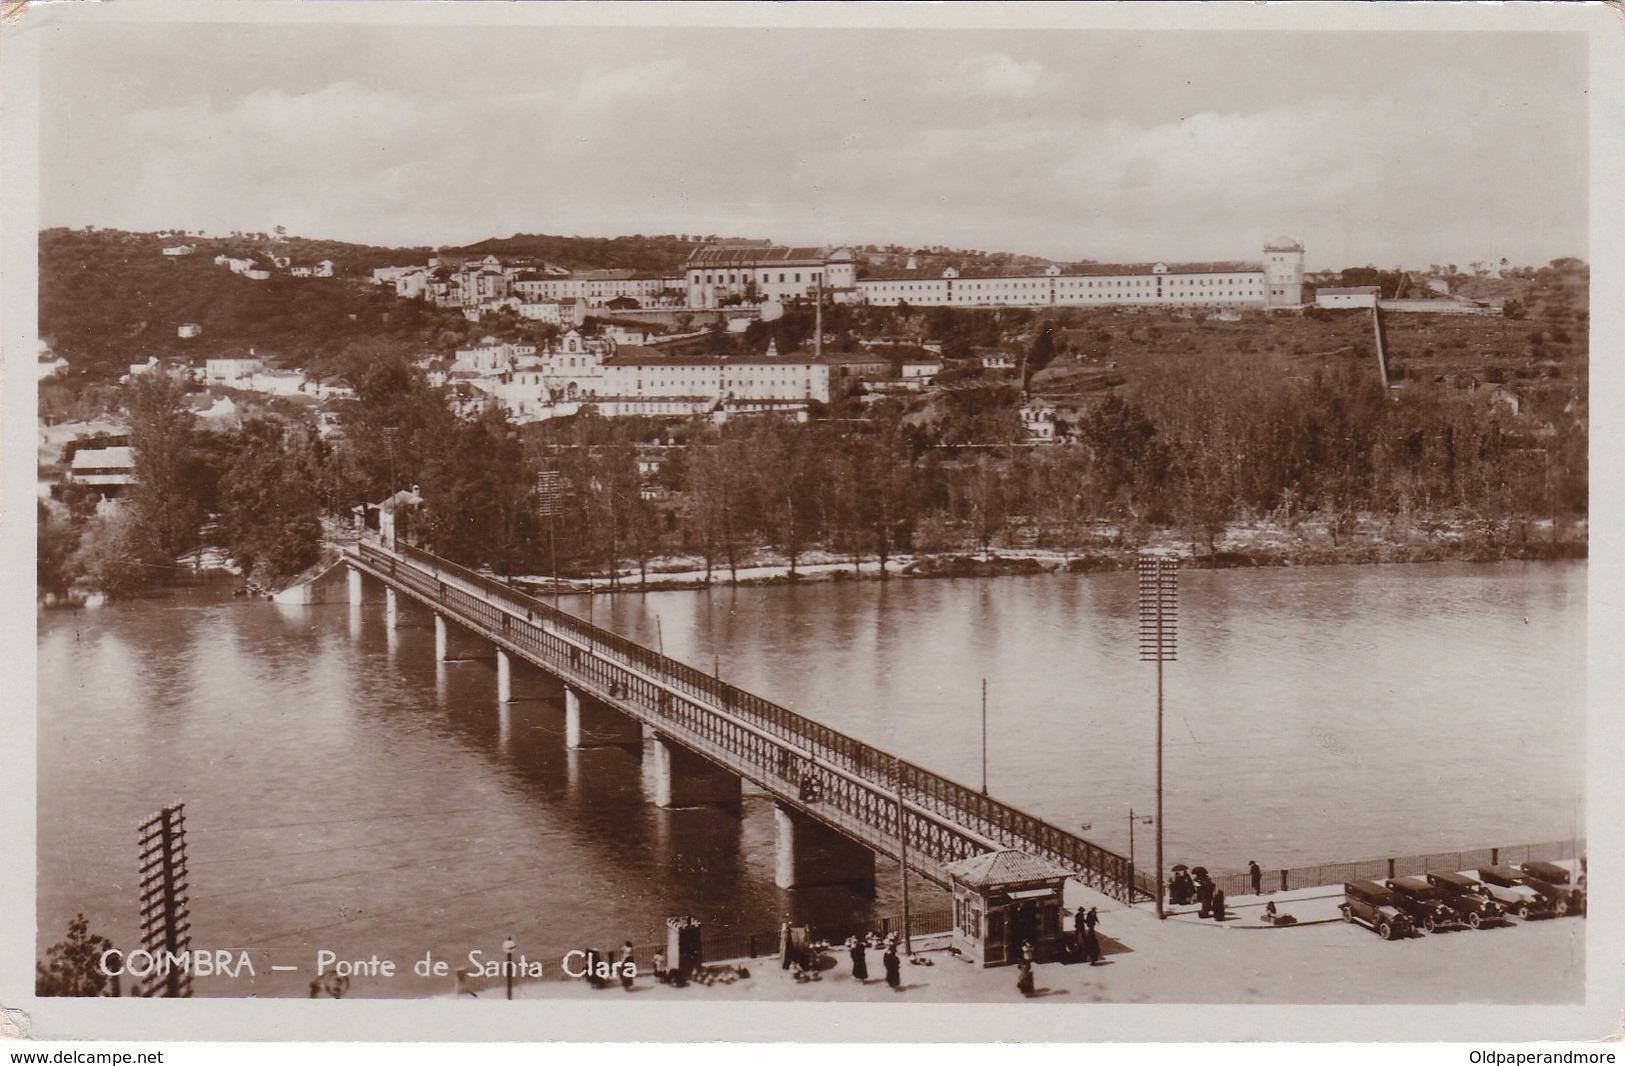 POSTCARD PORTUGAL - COIMBRA - PONTE DE SANTA CLARA - BRIDGE ON MONDEGO RIVER - OLD CARS - Coimbra